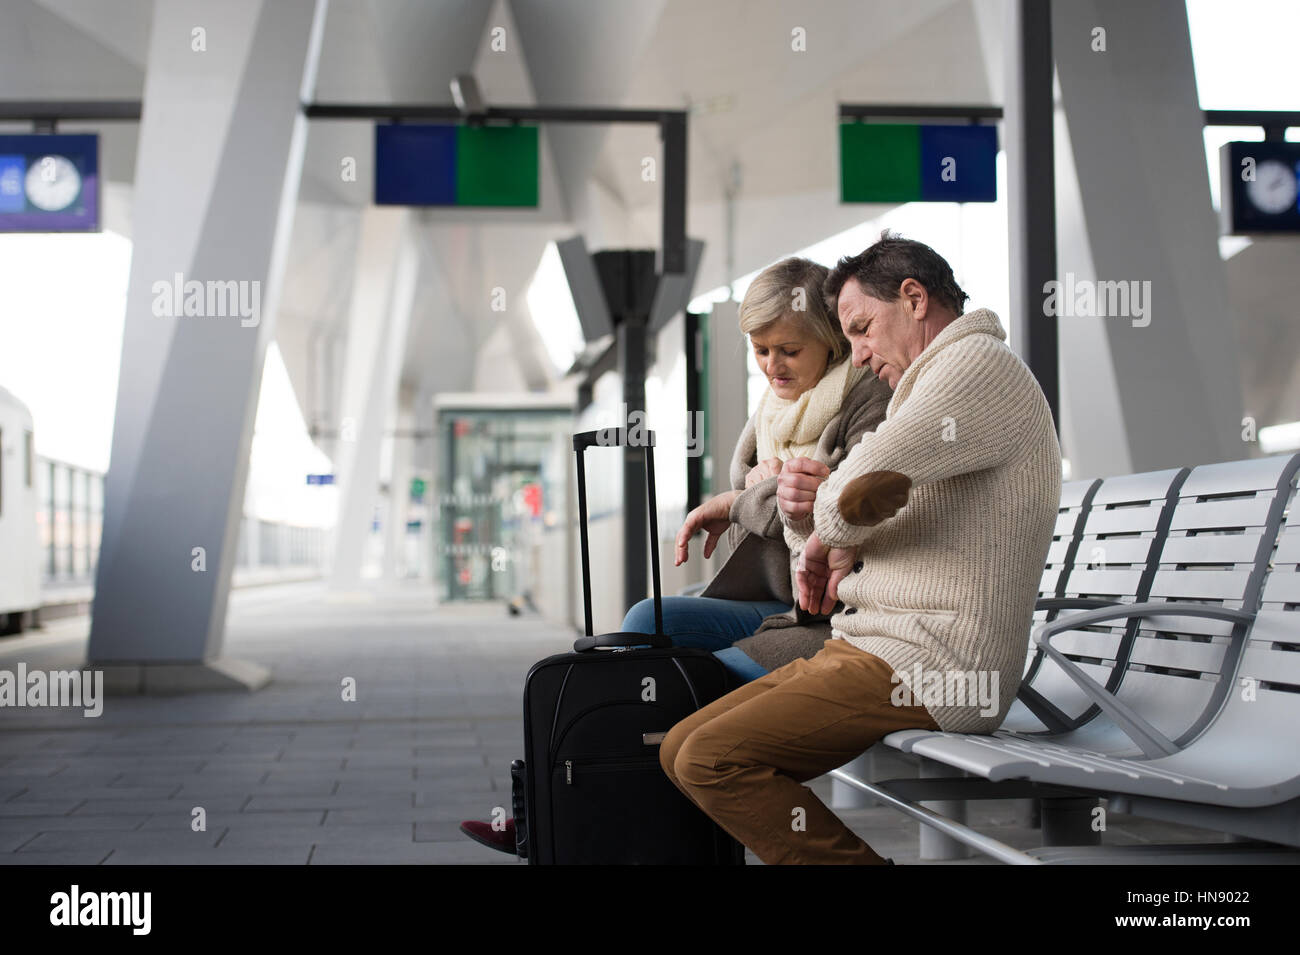 Älteres Paar warten am Bahnhof, Blick auf Uhr. Stockfoto